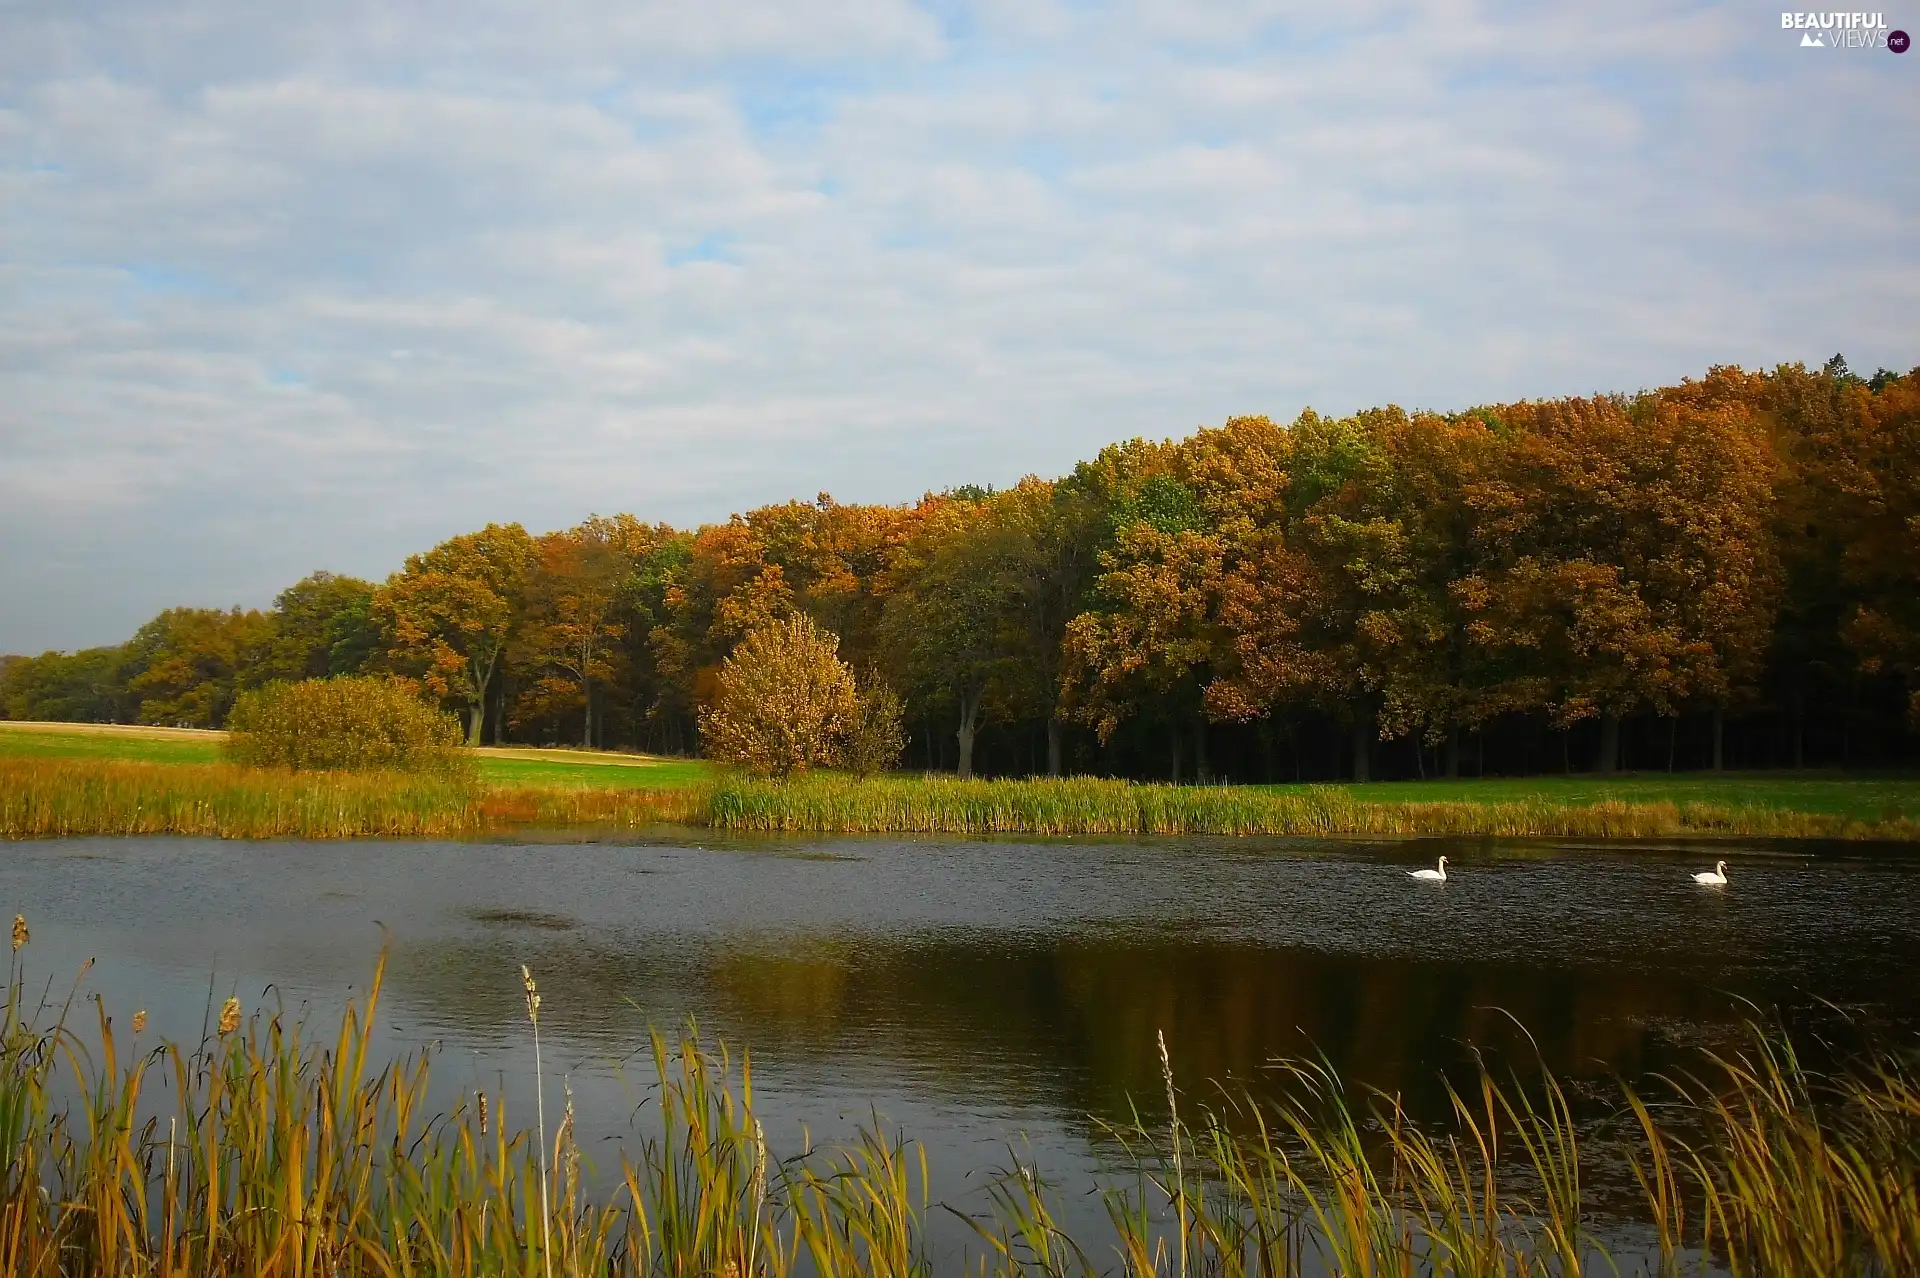 Swan, Pond - car, autumn